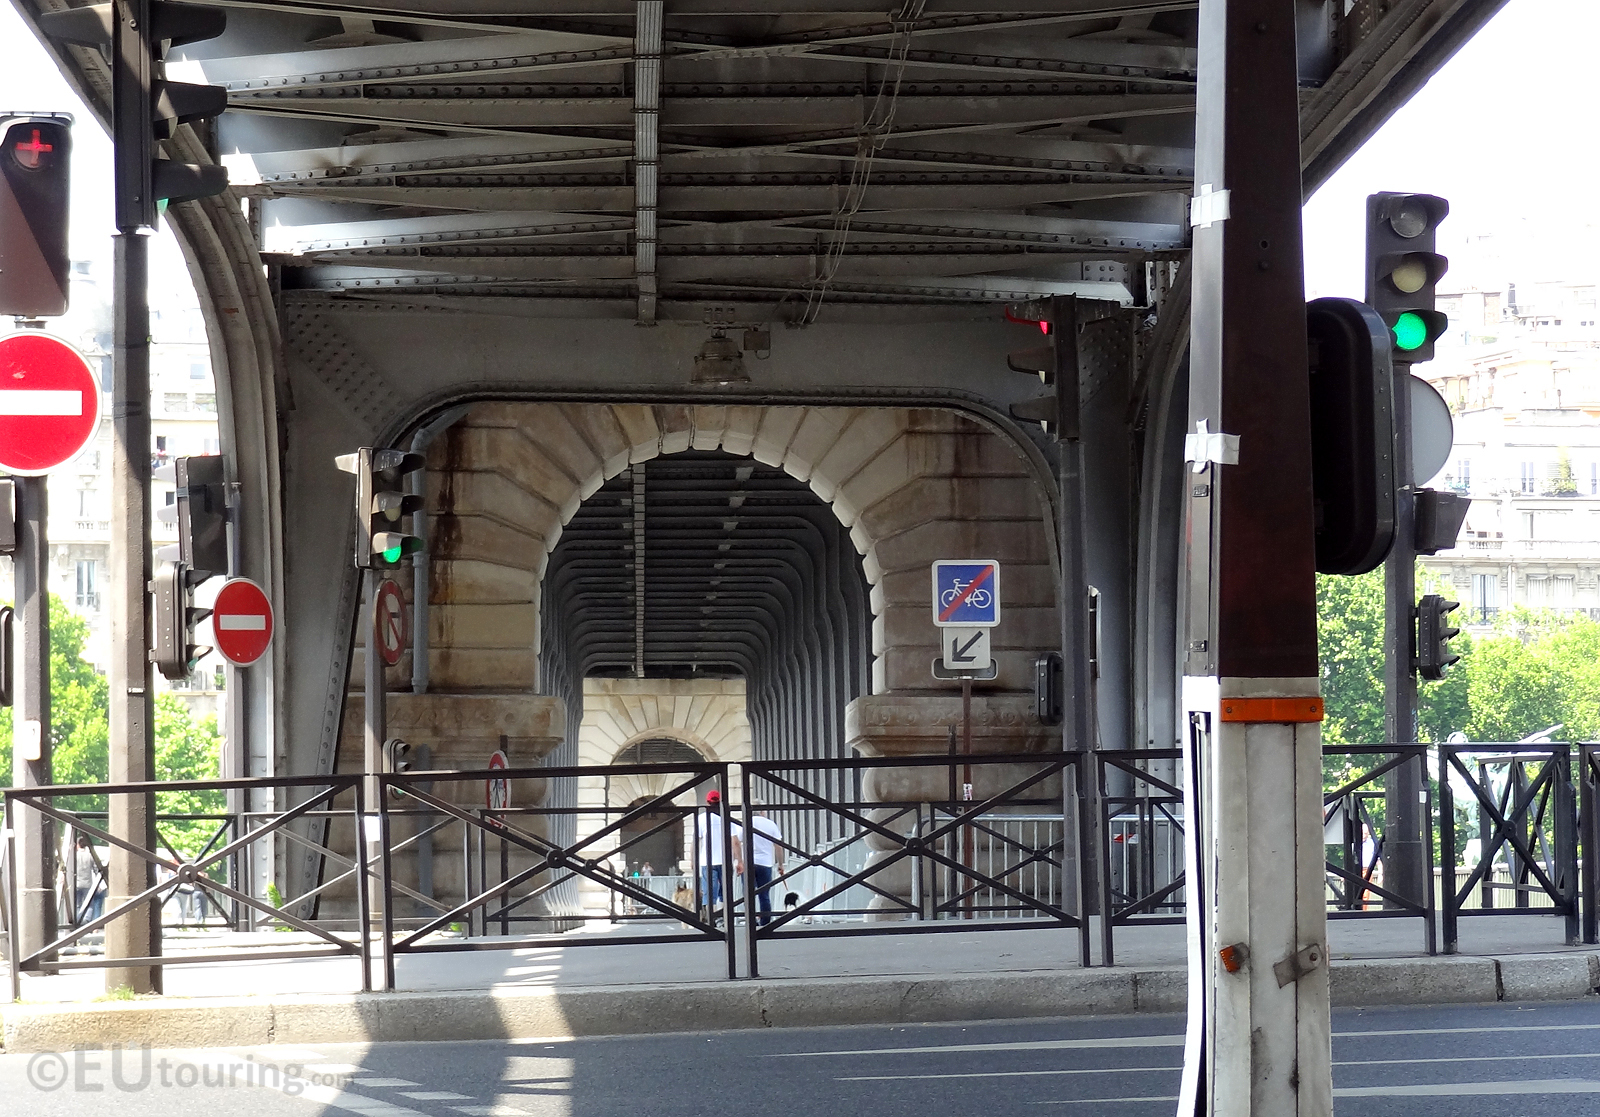 Under the Pont de Bir-Hakeim